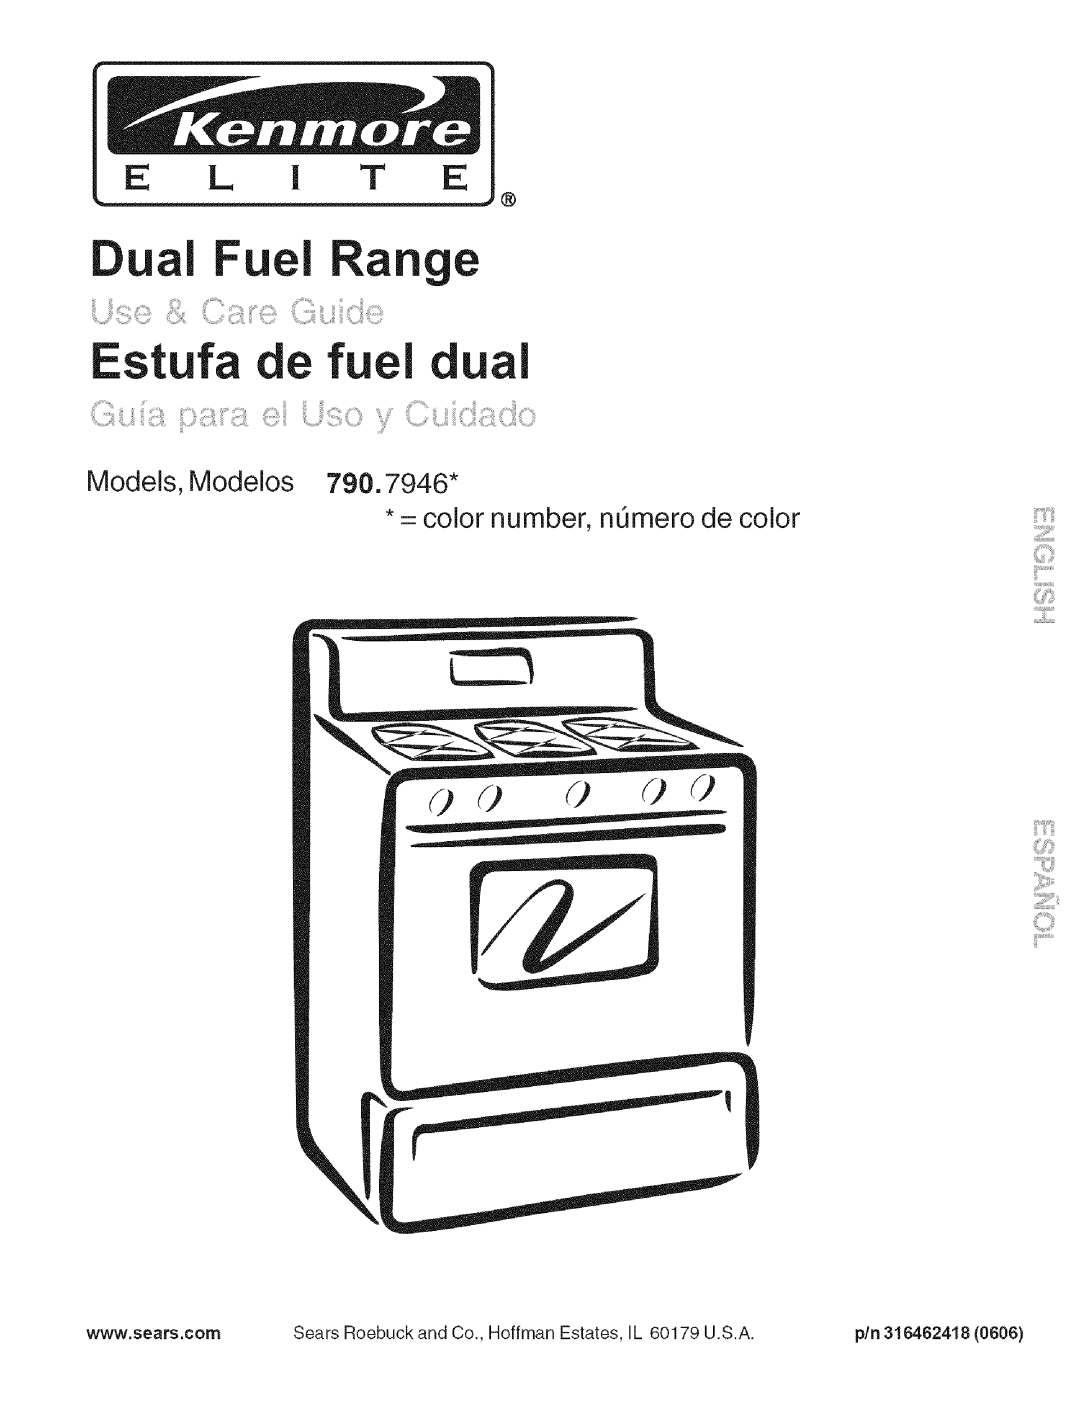 Kenmore 790.7946 manual Estufa e fuel dual, i_/,iiii_liiiil__, Models, Modelos = color number, nQmero de color, E L I T E 